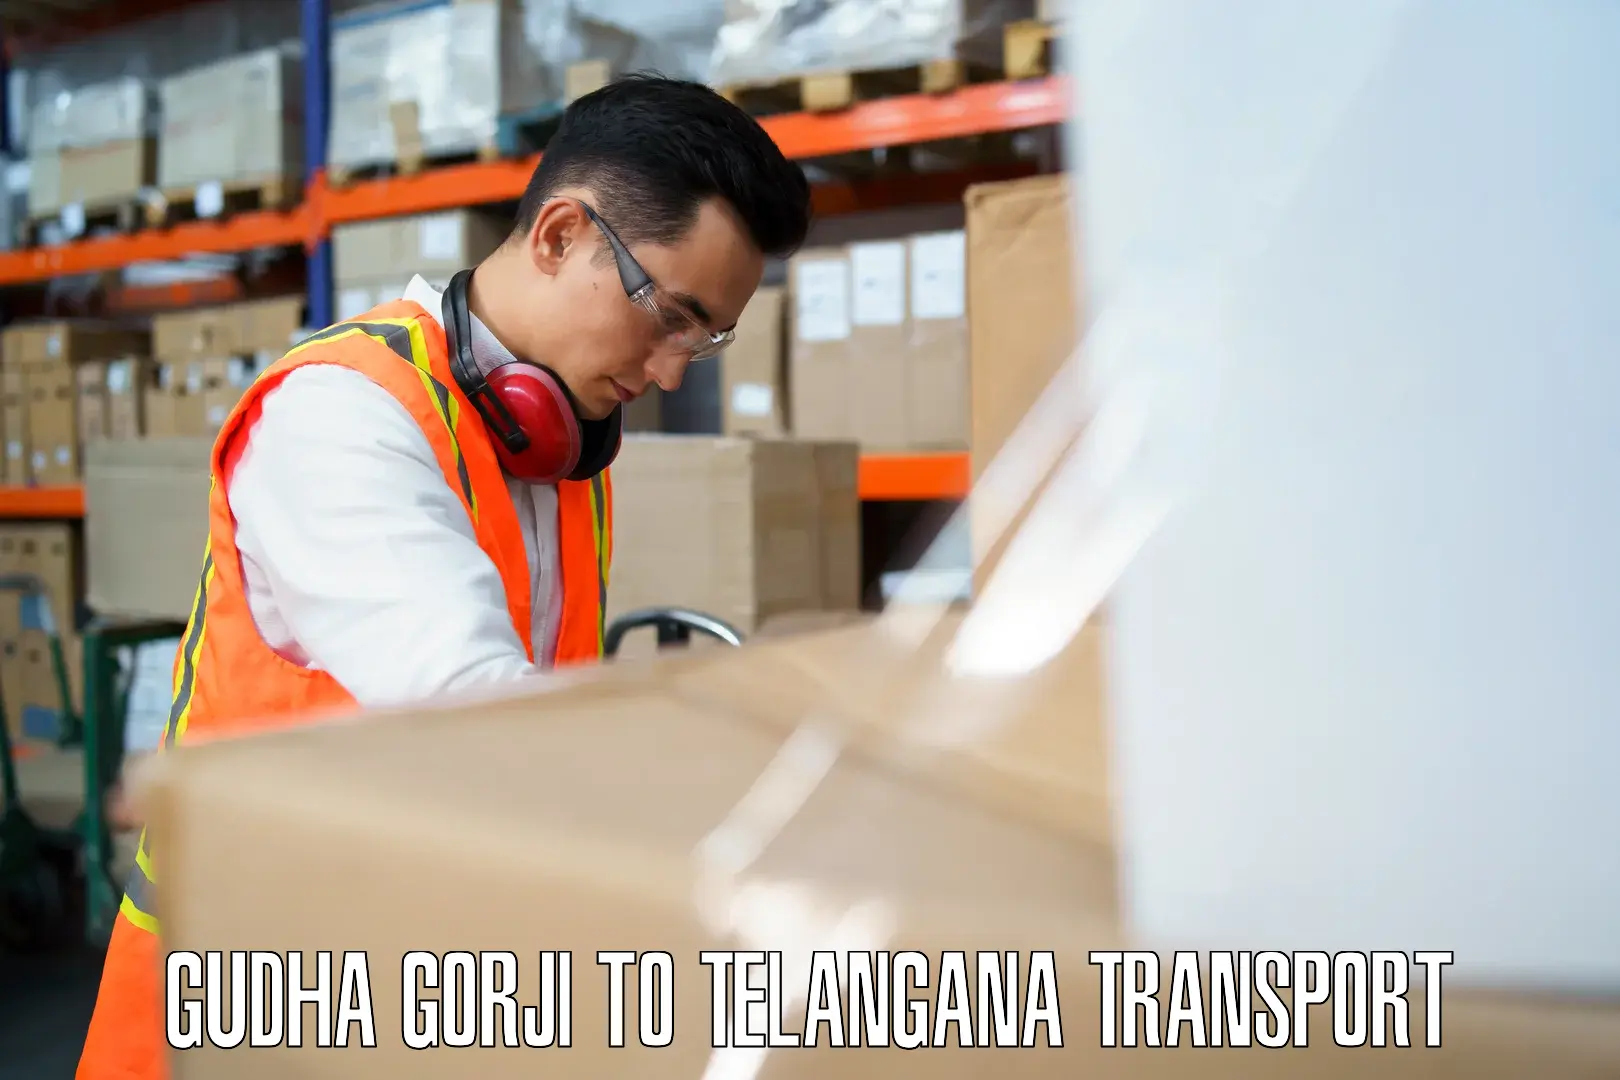 Cargo transport services in Gudha Gorji to Alair